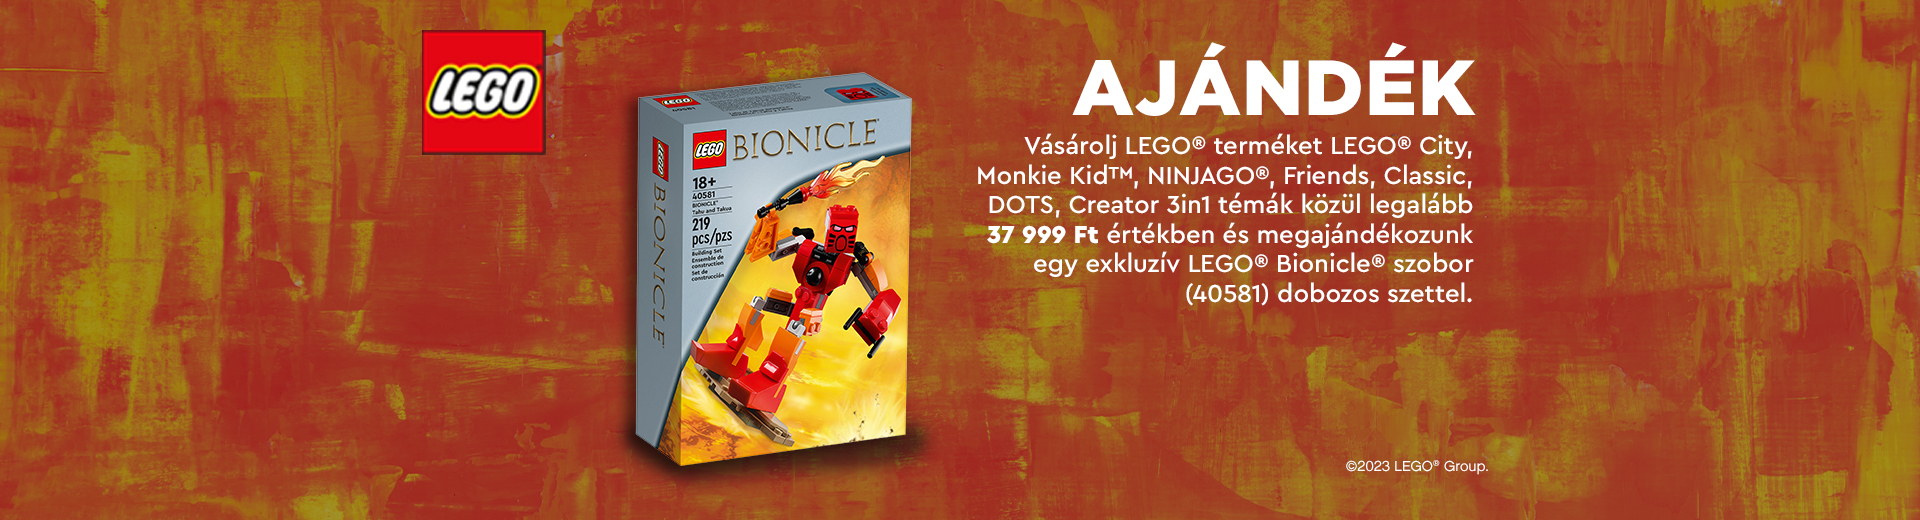 LEGO Bionicle akció